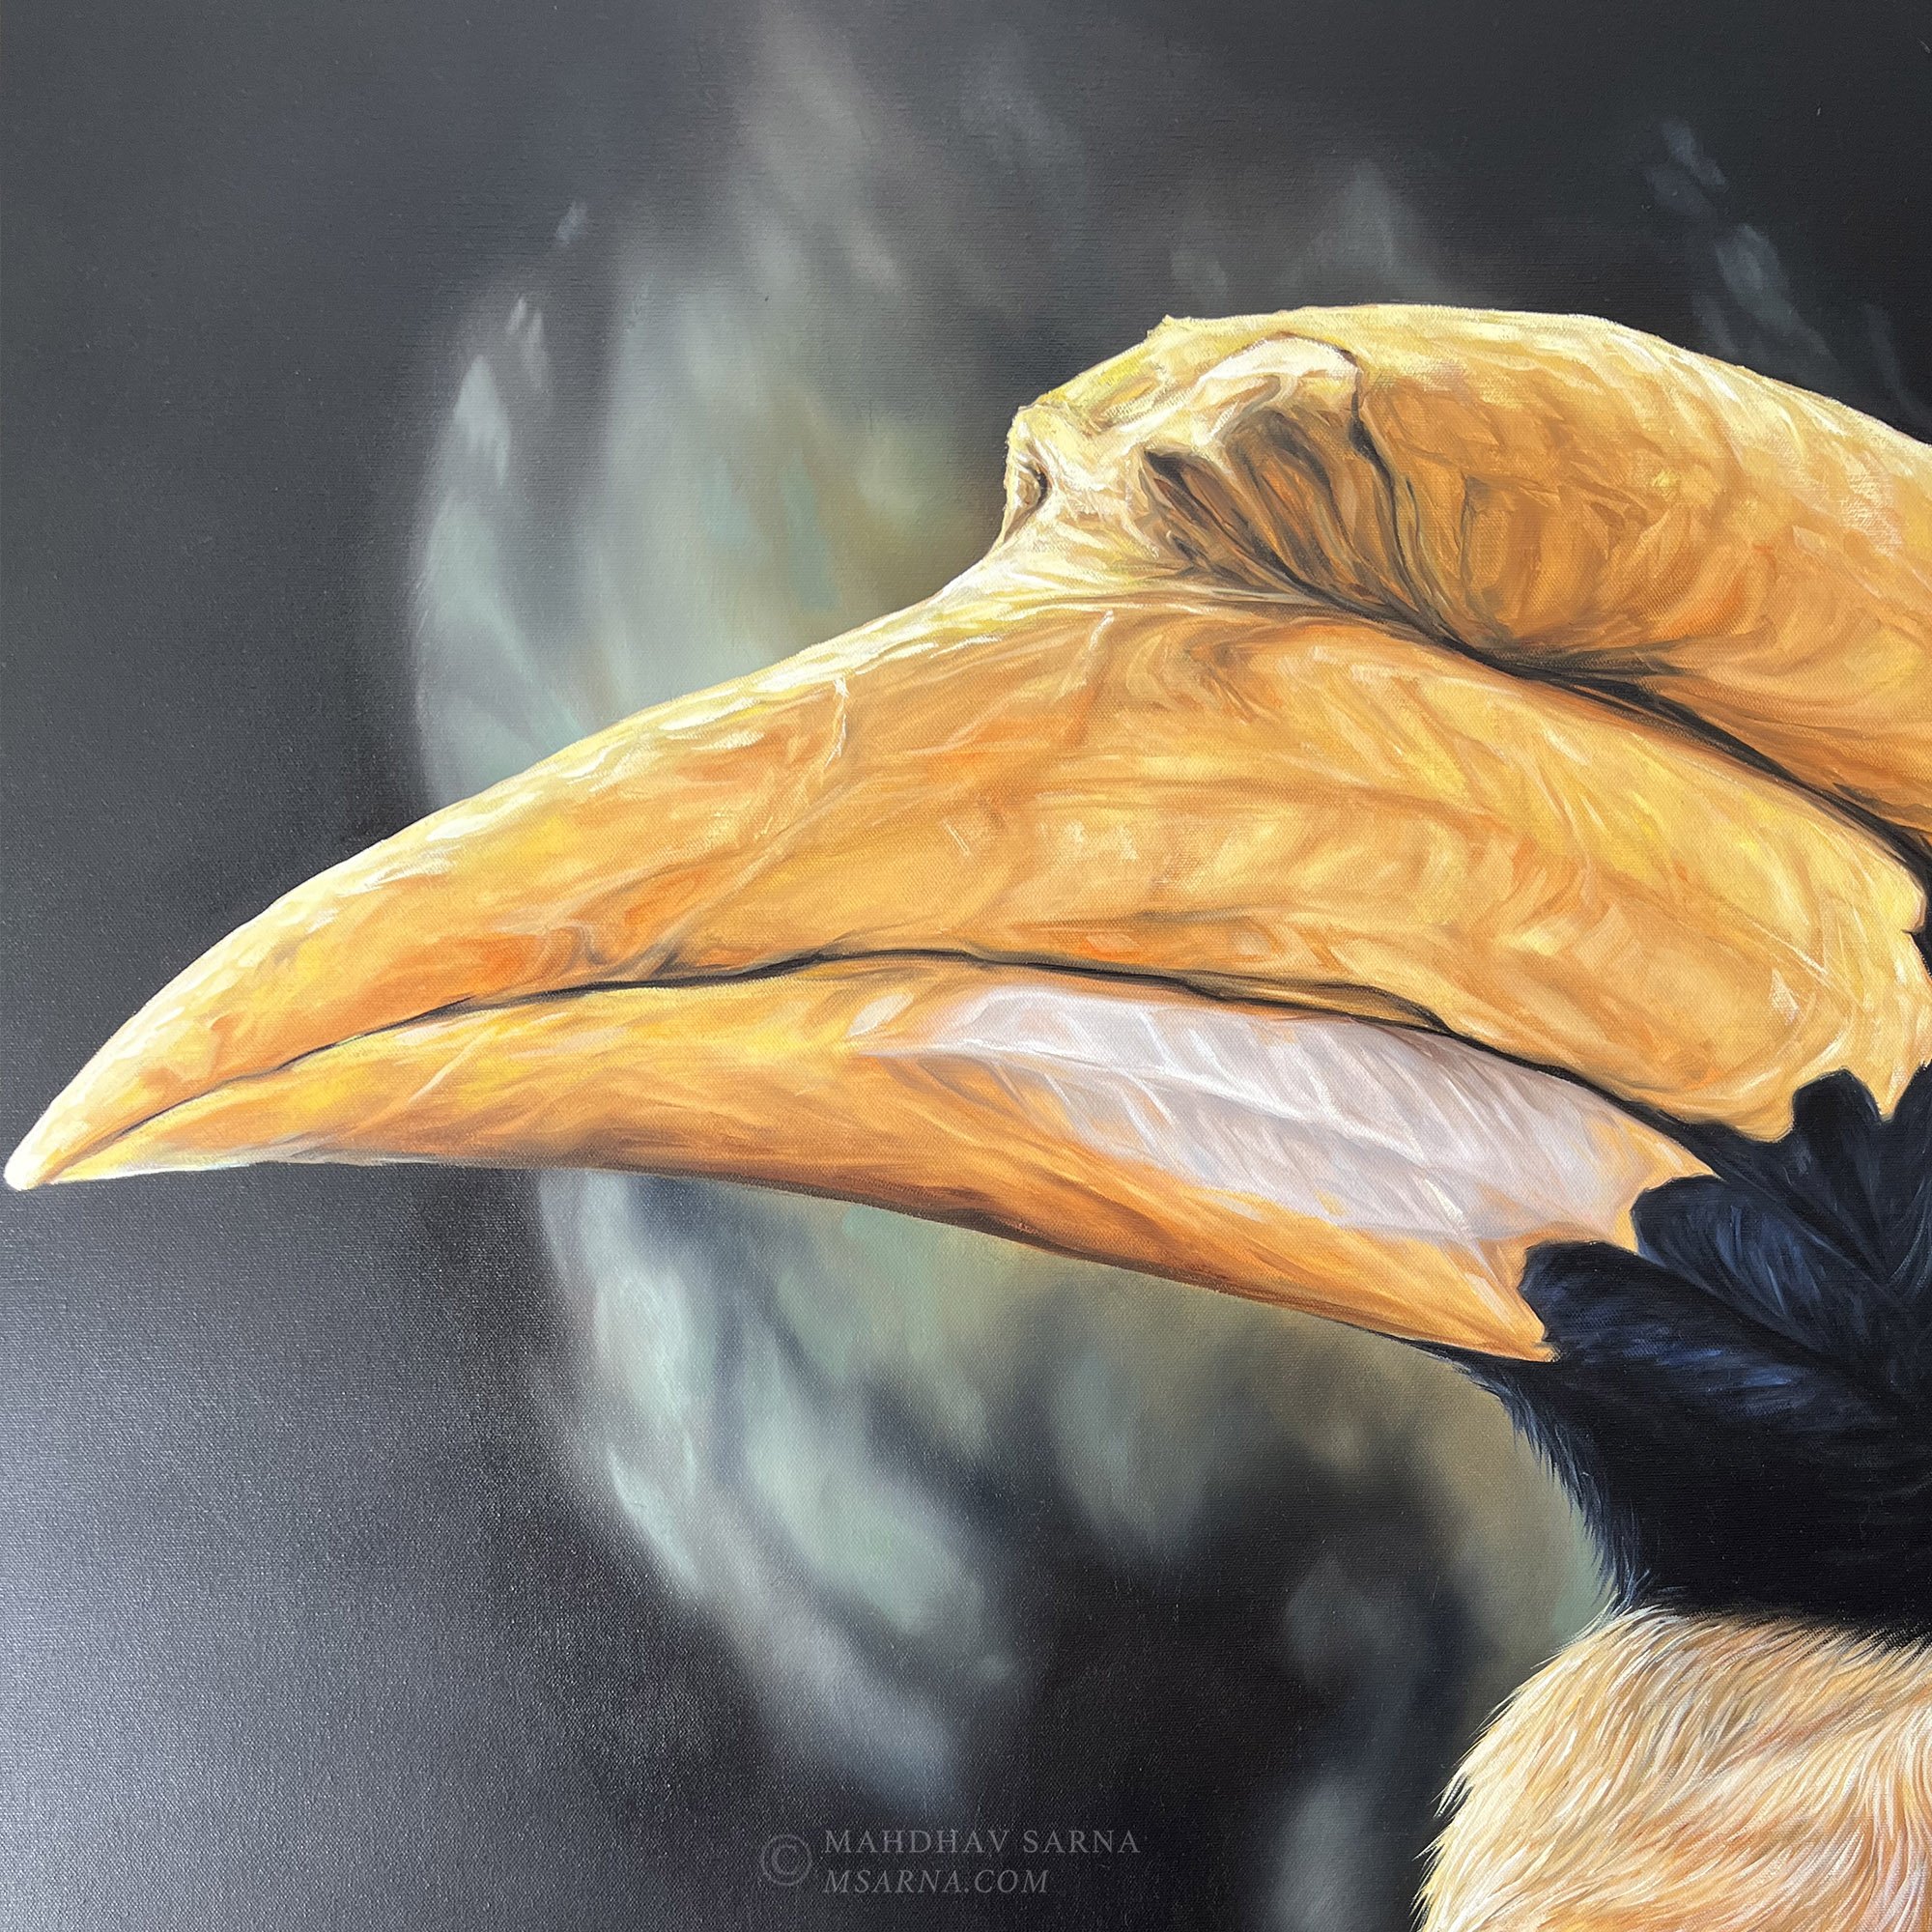 hornbill oil painting pois wildlife art mahdhav sarna 02.jpg